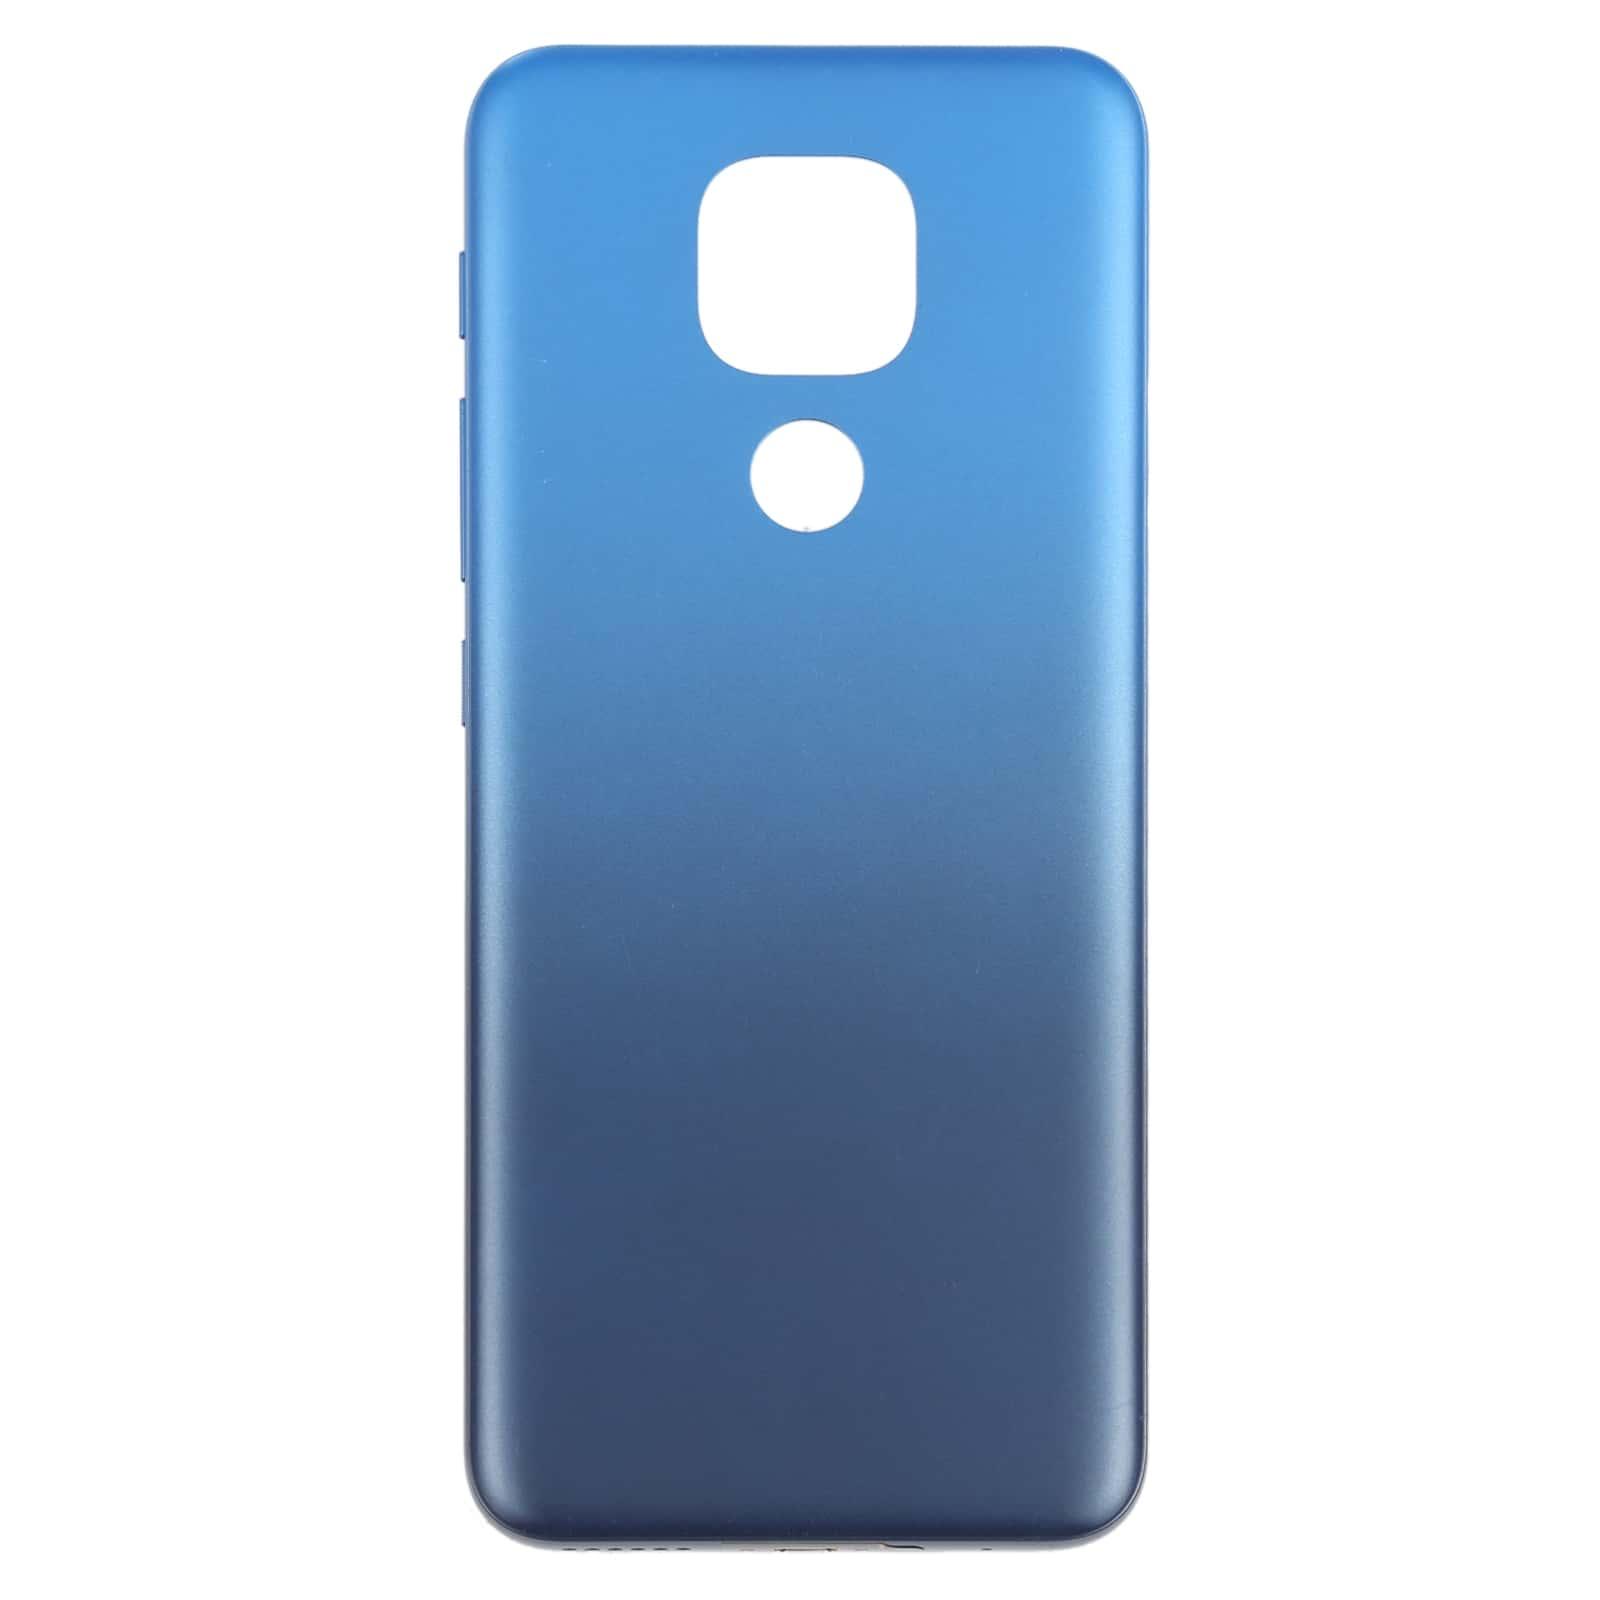 Back Panel Housing Body for Motorola Moto E7 Plus Blue